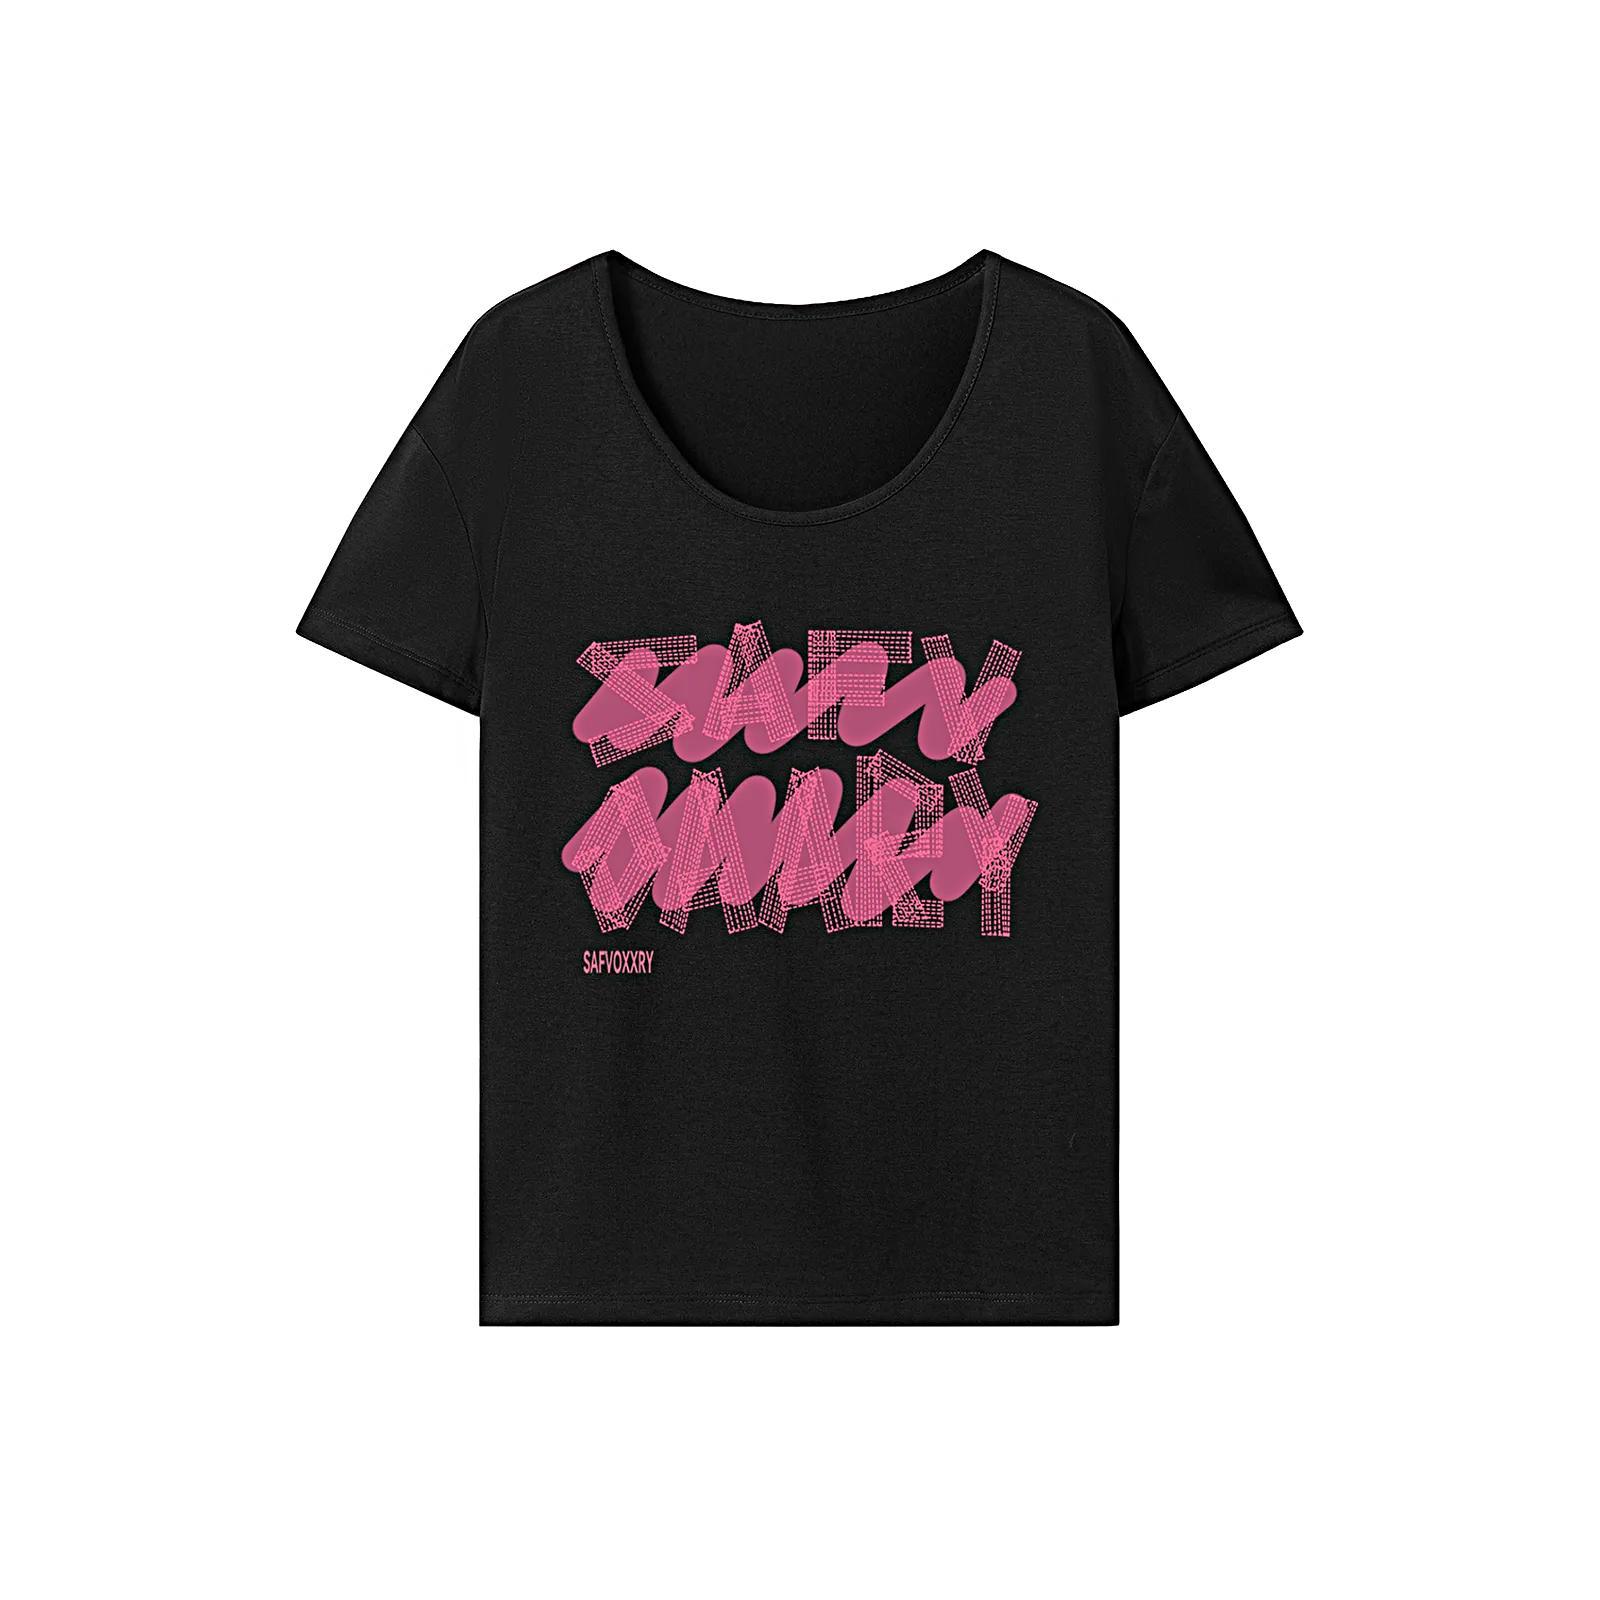 T Shirt for Women Summer Lightweight Crew Neck Tee for Walking Shopping Work XL